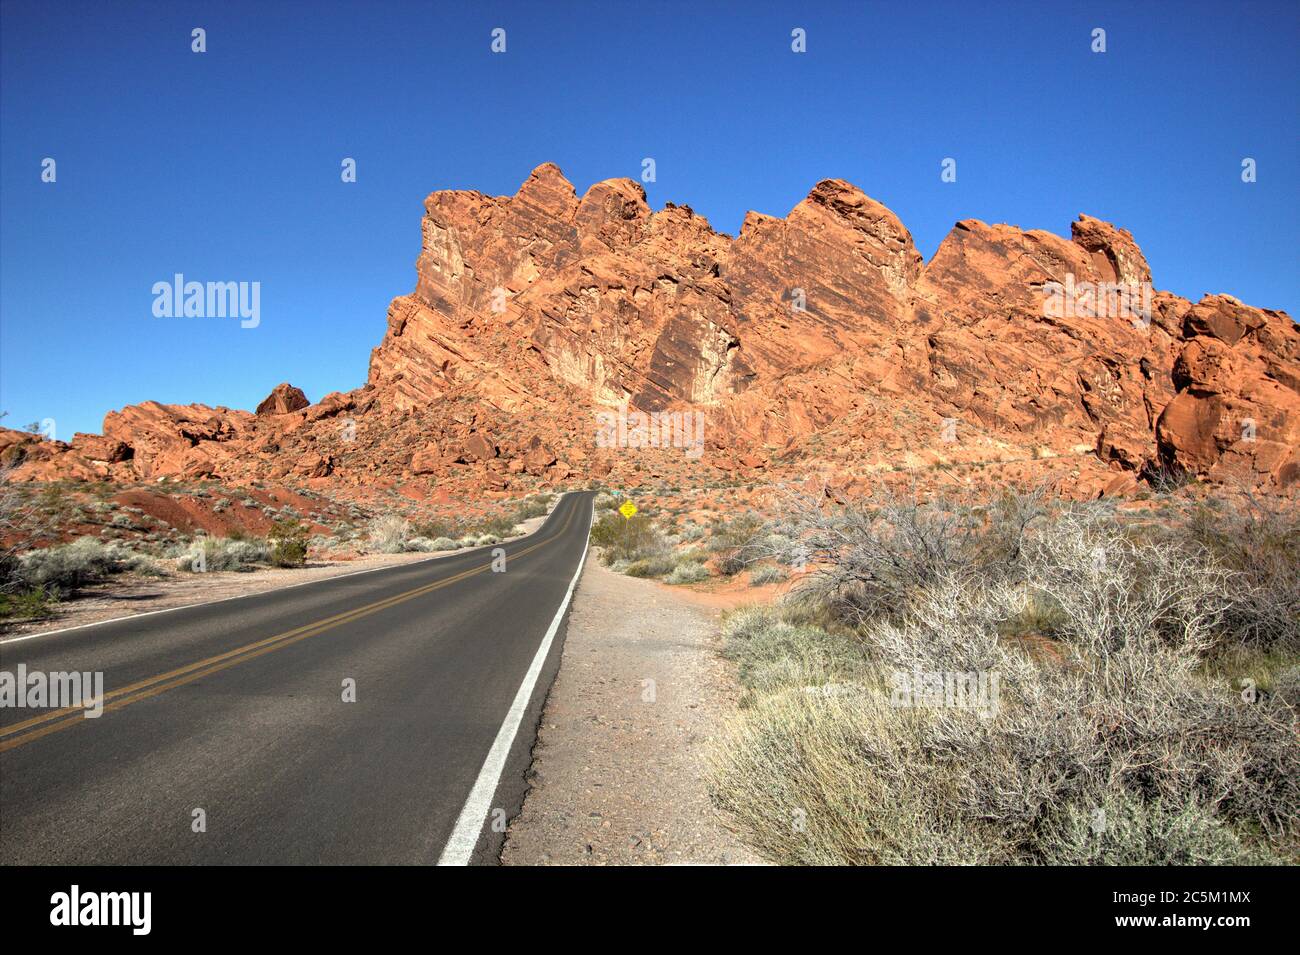 L'autostrada Nevada 169 è una strada panoramica dello stato del Nevada. L'autostrada a due corsie attraversa la Valle del fuoco e offre viste panoramiche sulle montagne e sul deserto. Foto Stock